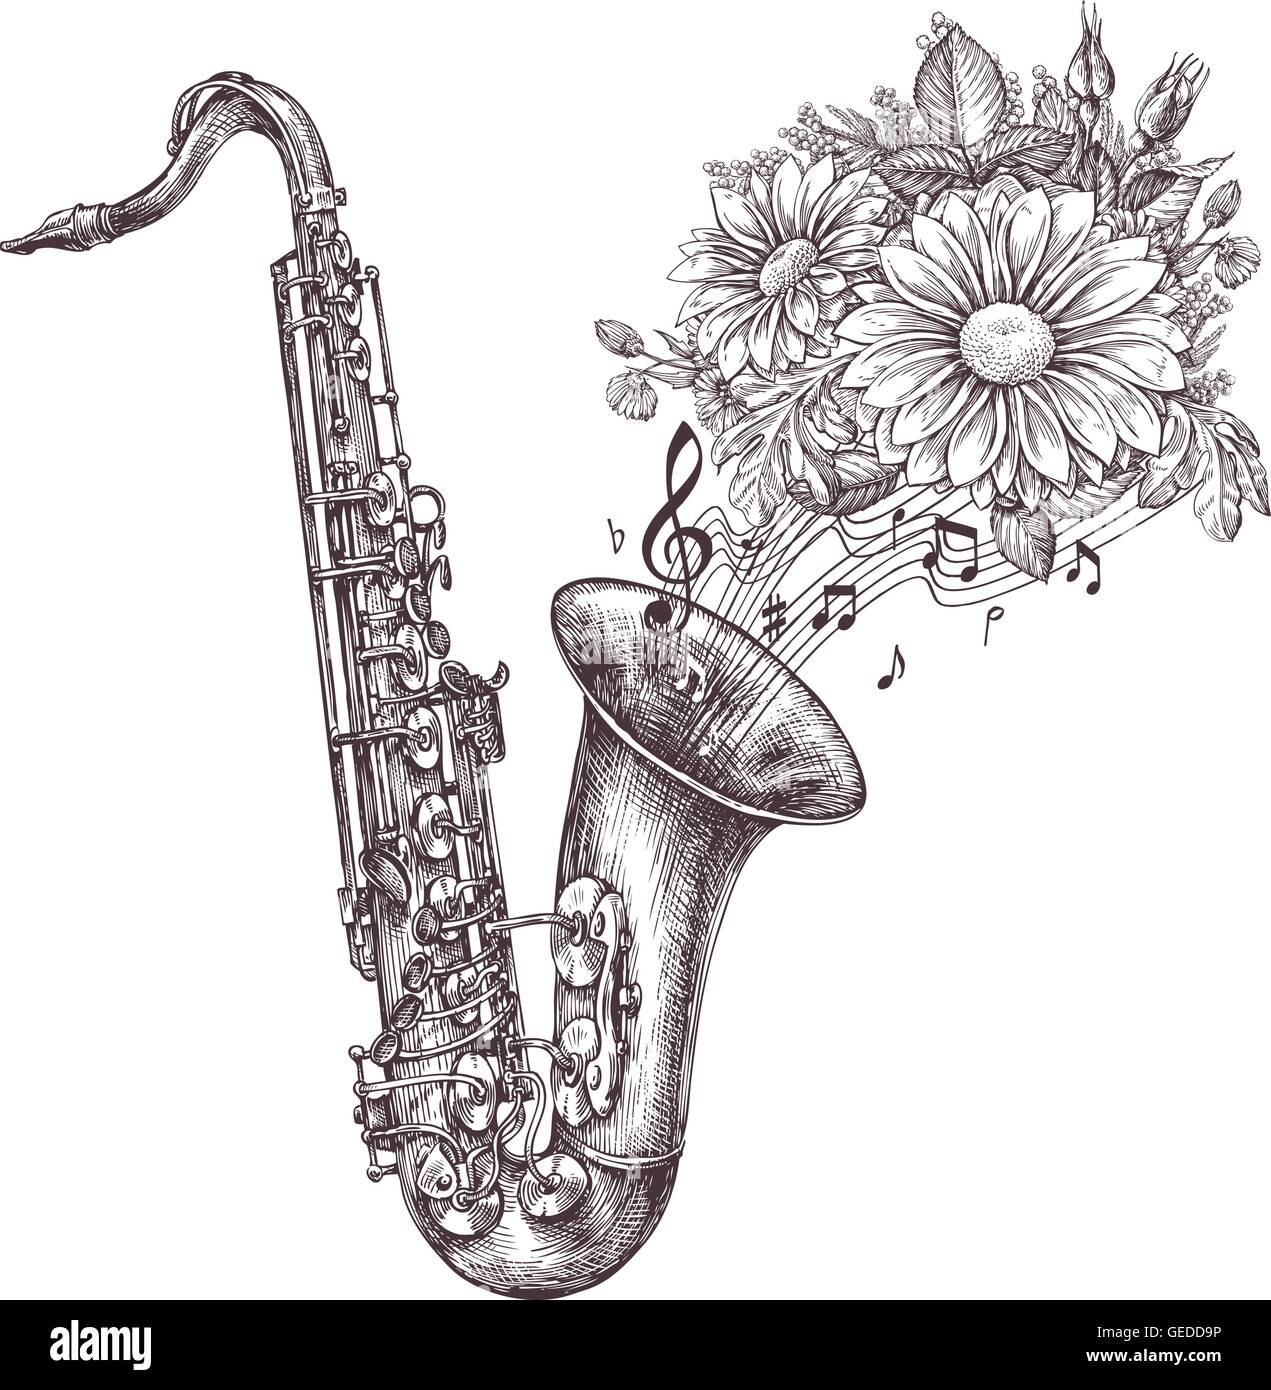 Jazz-Musik. Handgezeichnete Skizze ein Saxophon, Sax und Blumen. Vektor-illustration Stock Vektor